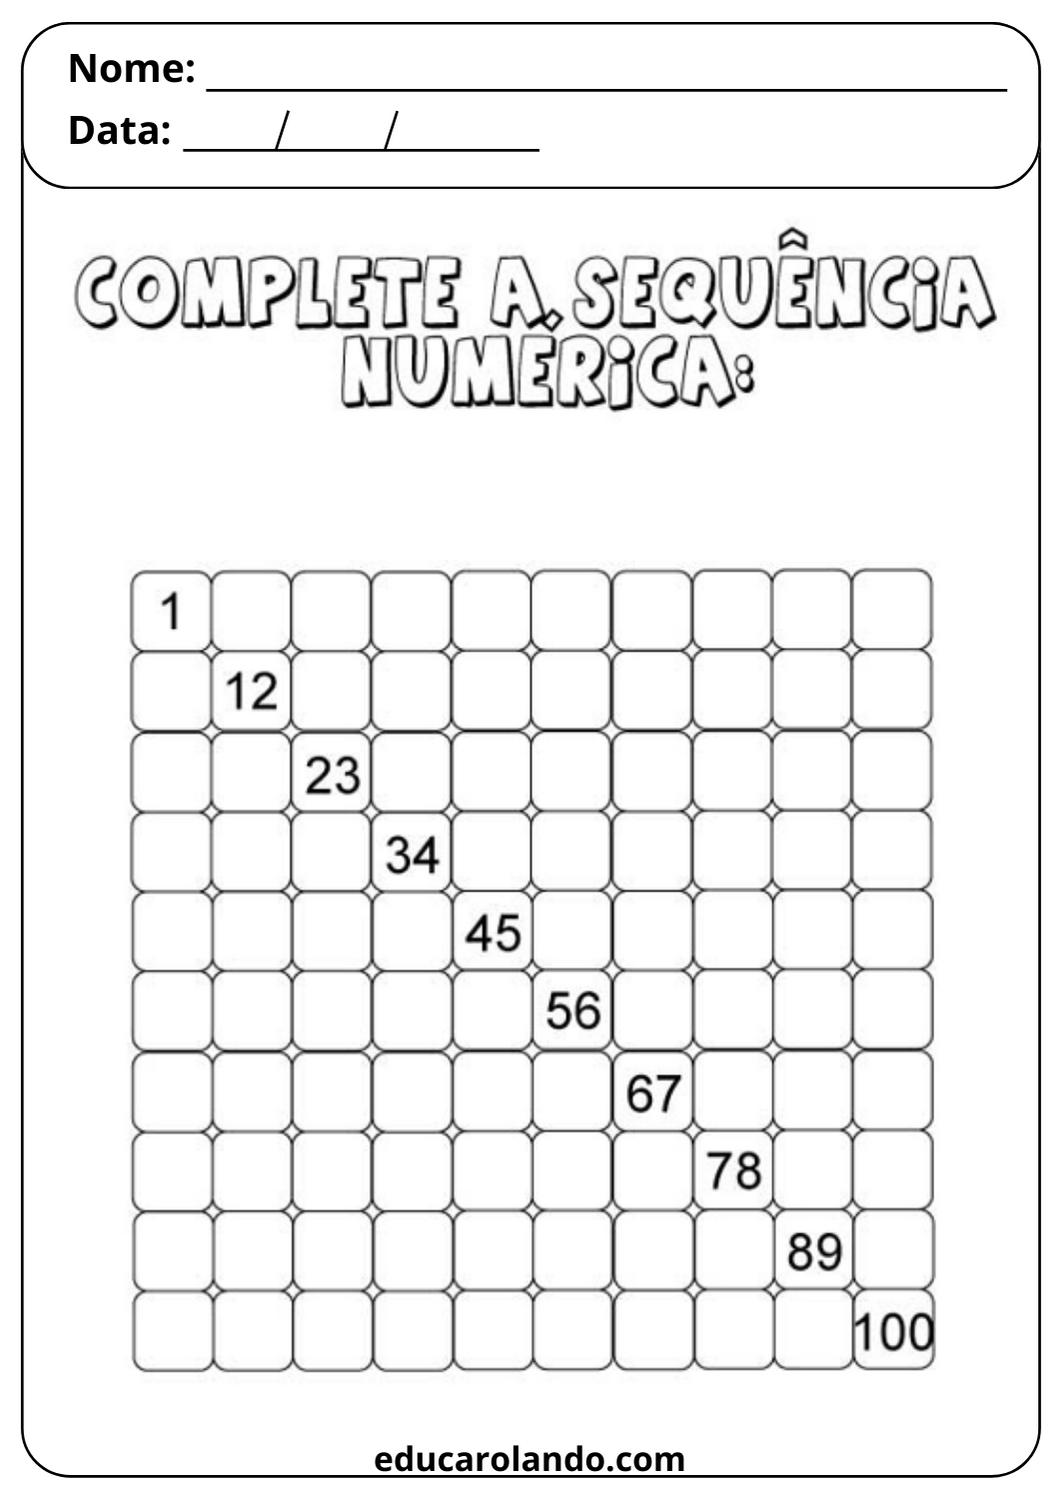 Complete a sequência numérica (3)